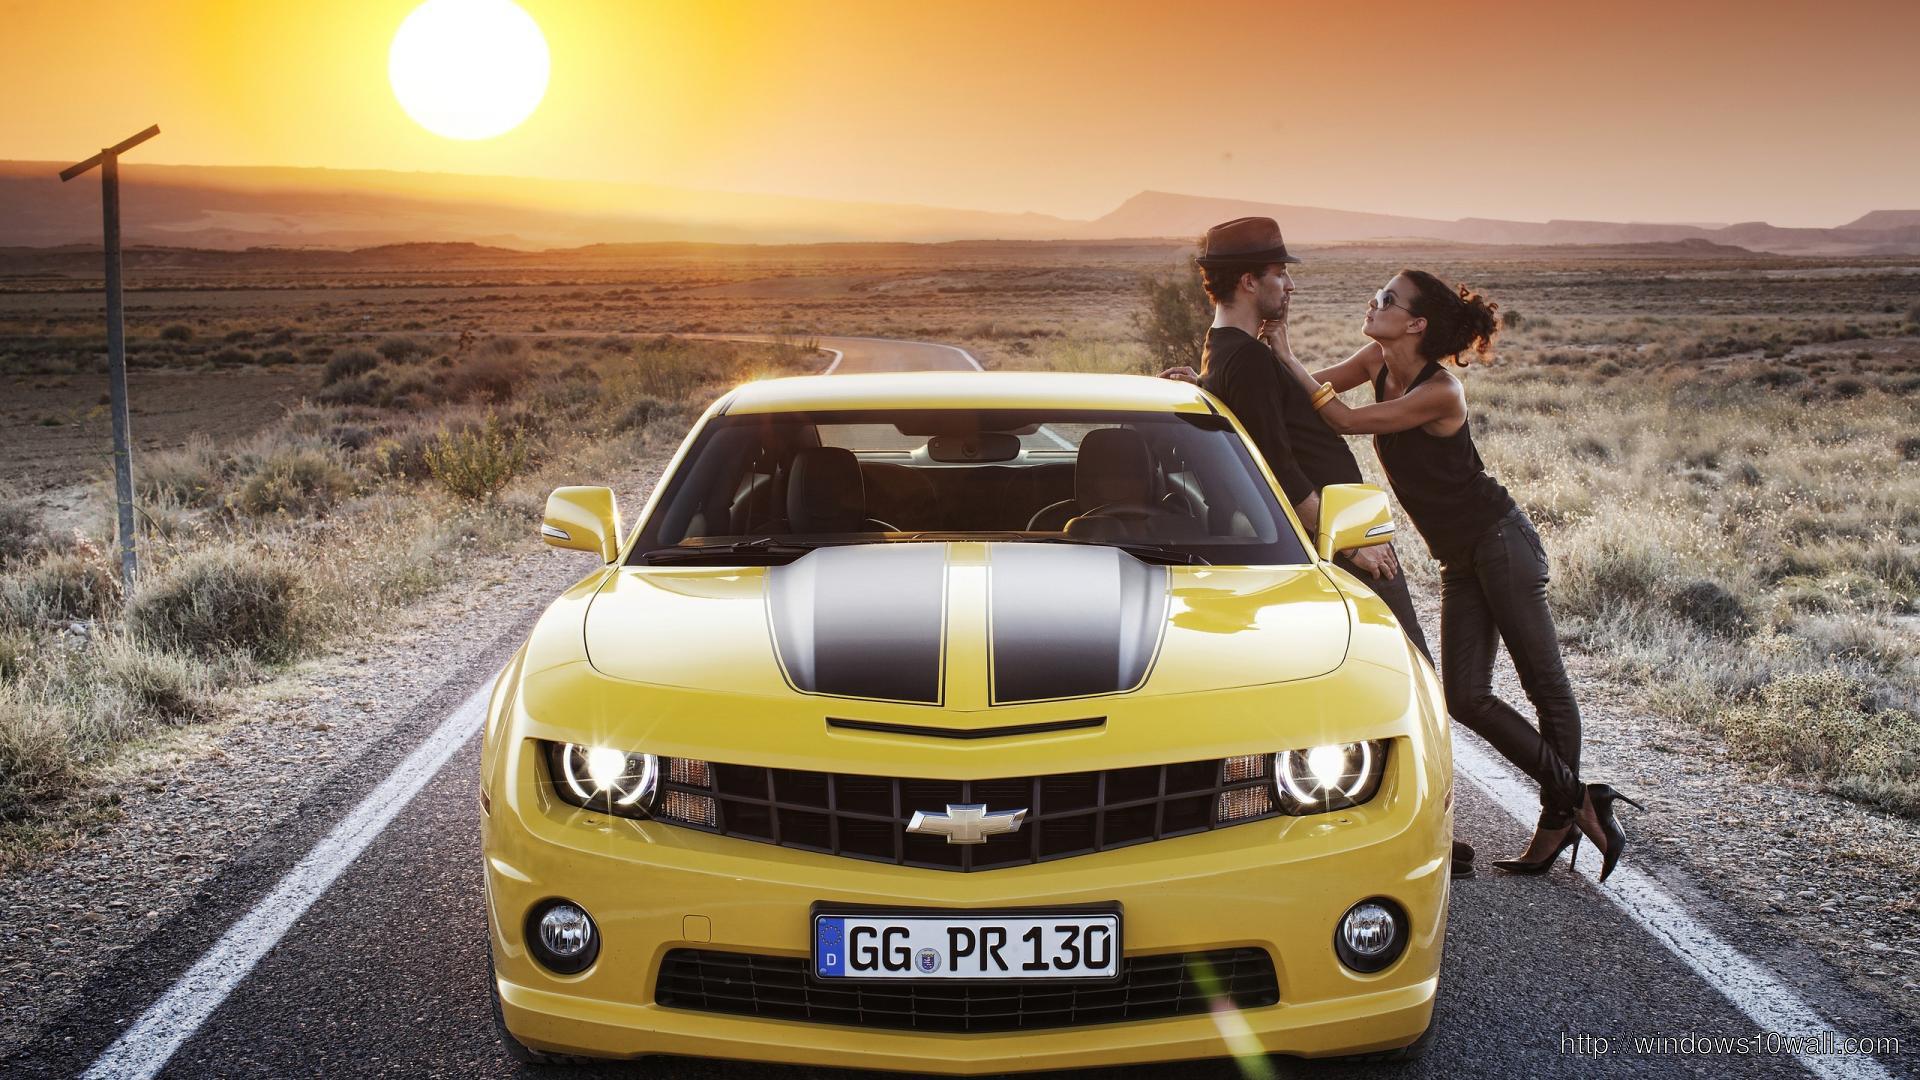 Chevrolet in Sunset Background Wallpaper